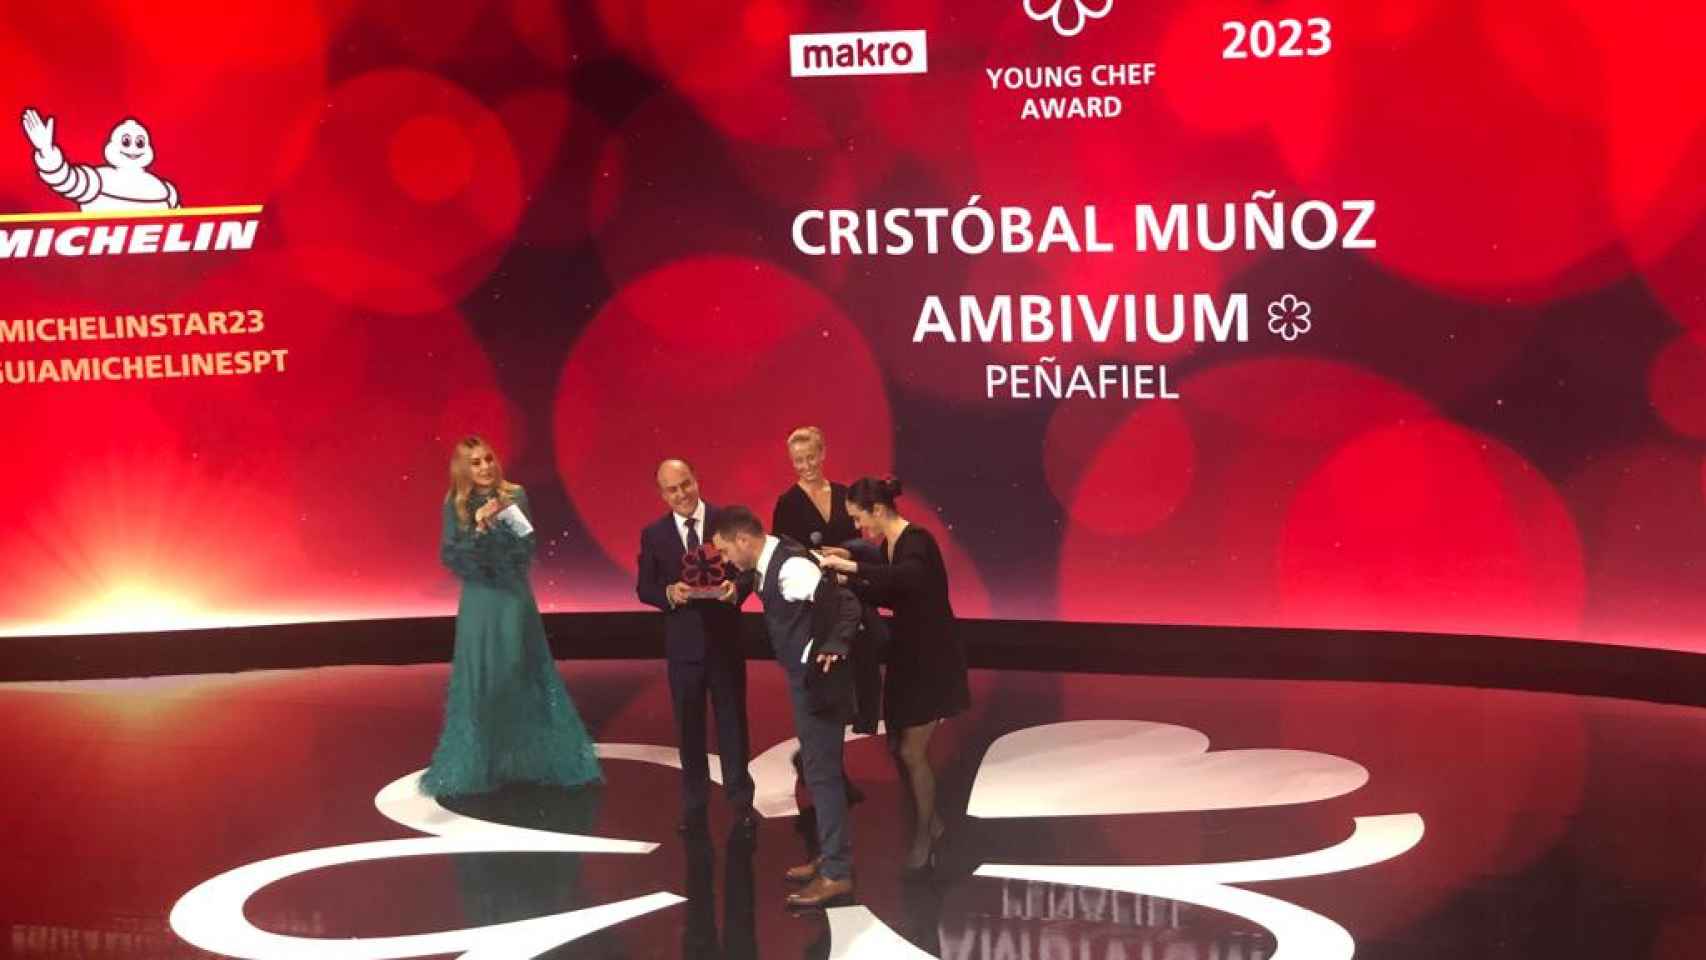 Premio para Cristóbal Muñoz, del restaurante Ambivium en Peñafiel (Valladolid).